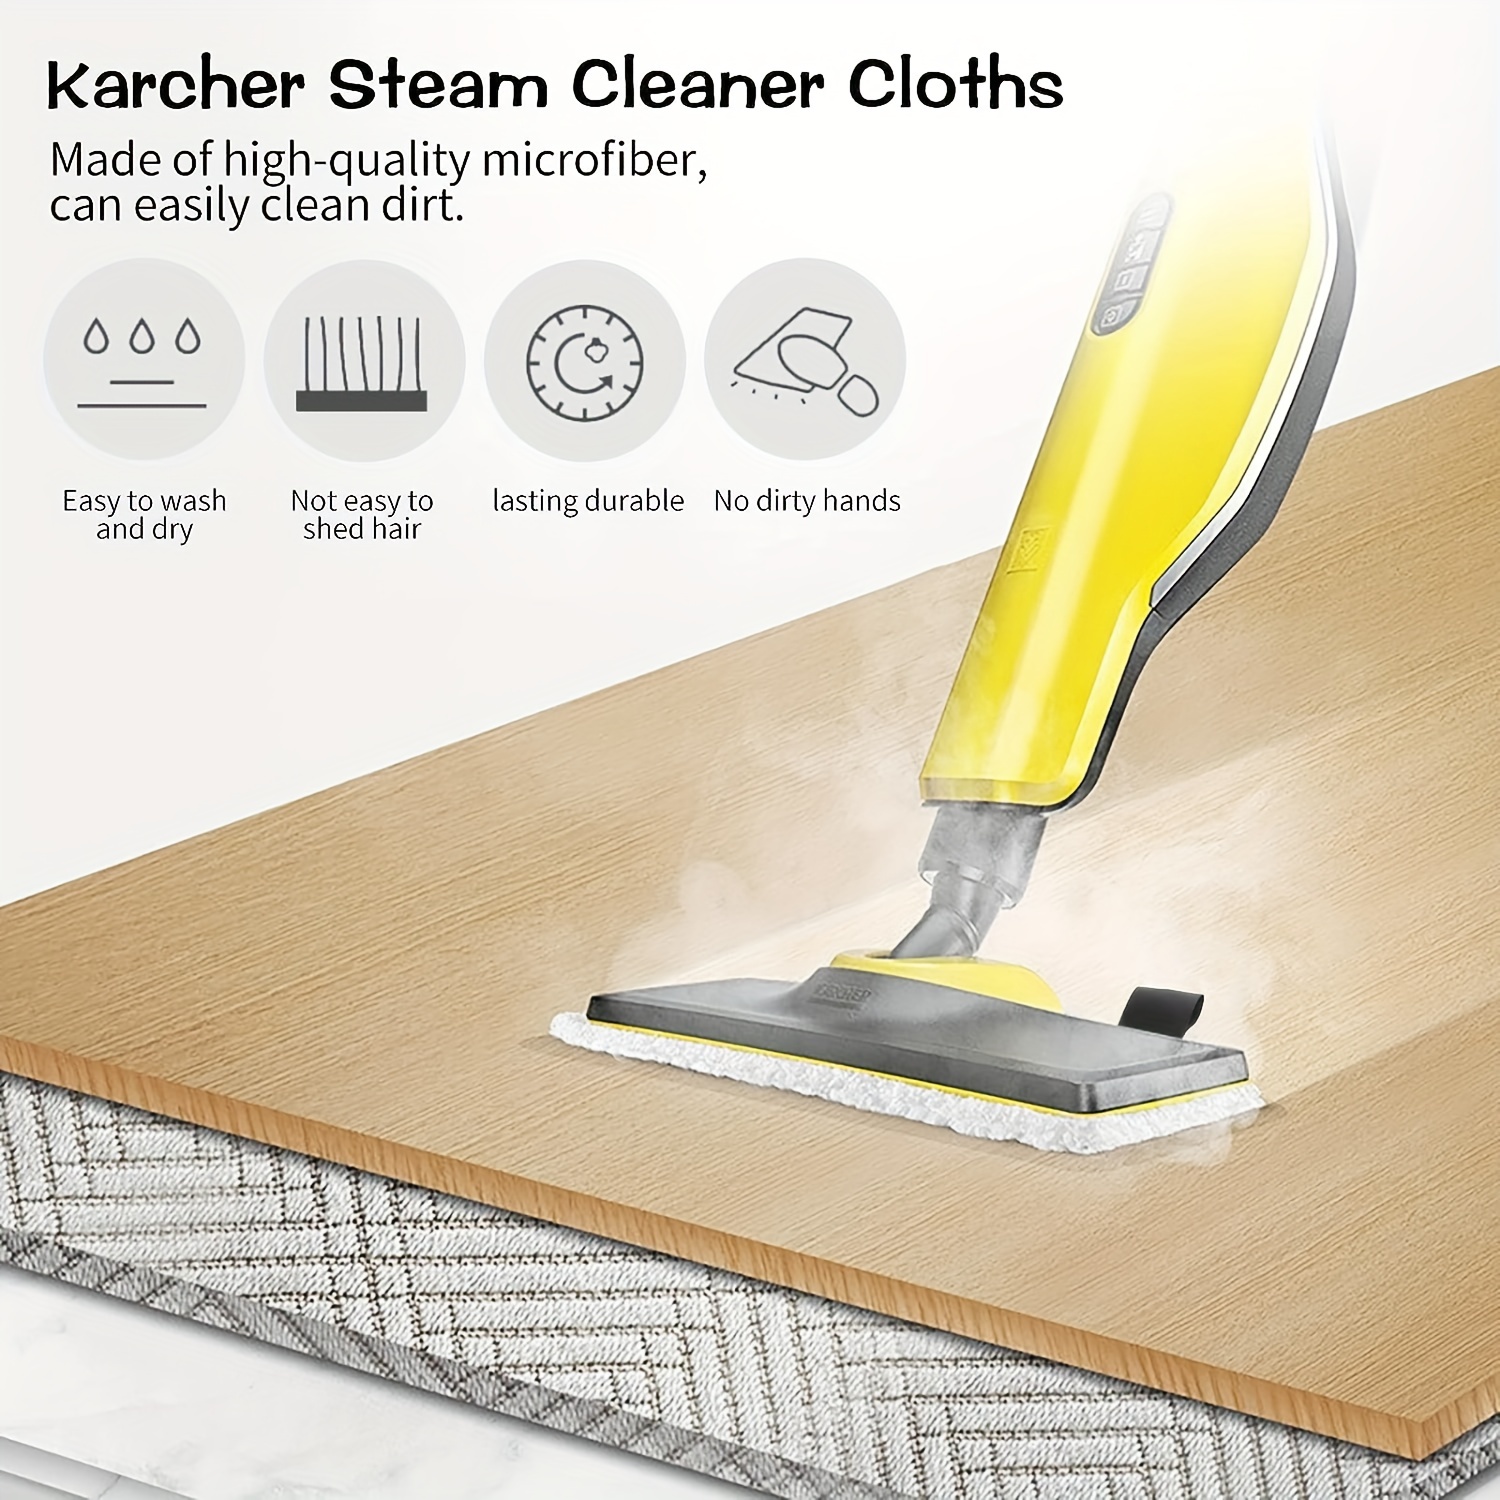 Karcher SC 3 Upright EasyFix Steam Cleaner Steam Mop